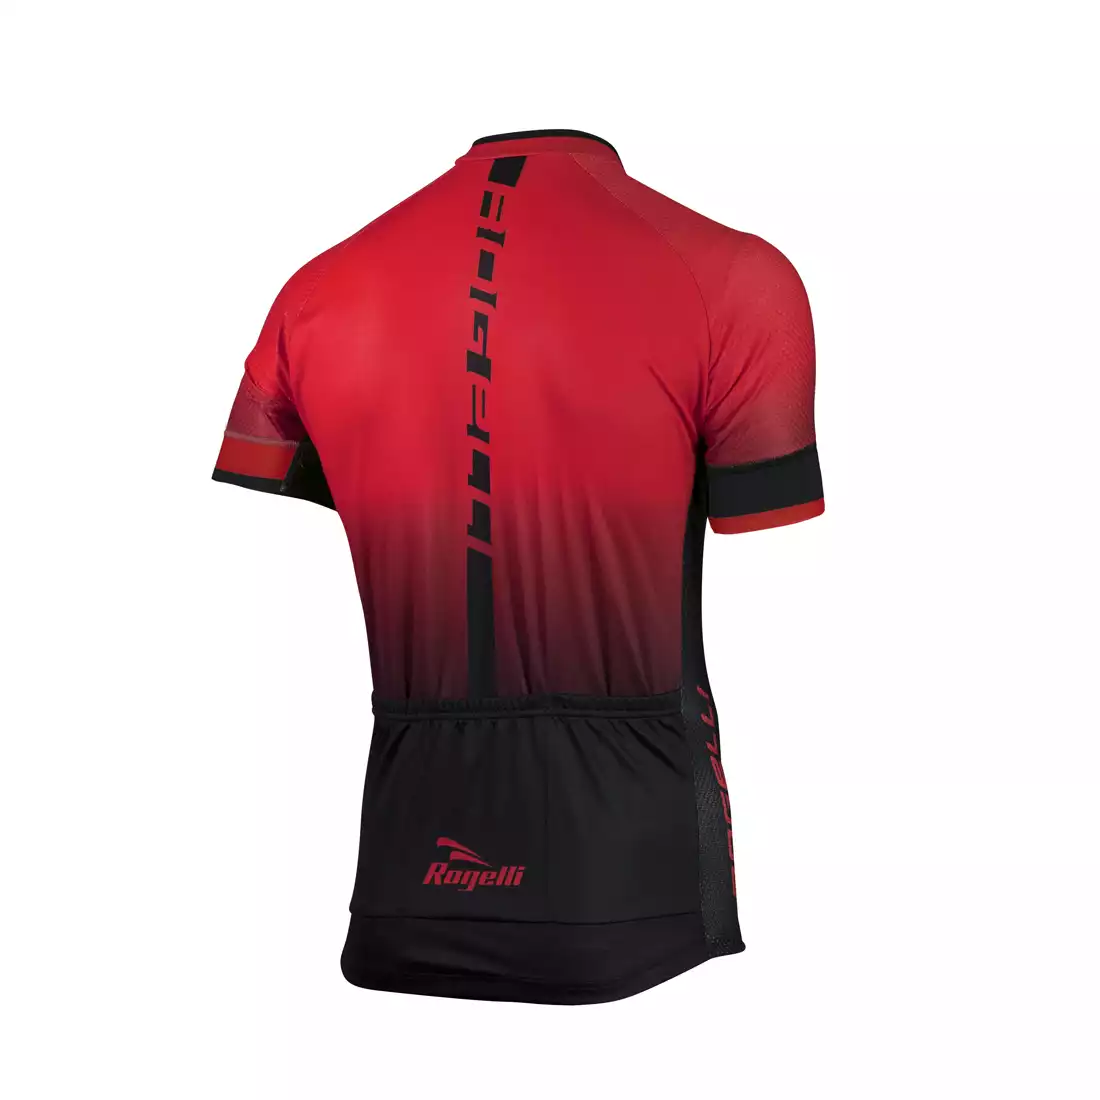 ROGELLI ISPIRATO koszulka rowerowa, czerwono-czarna 001.401